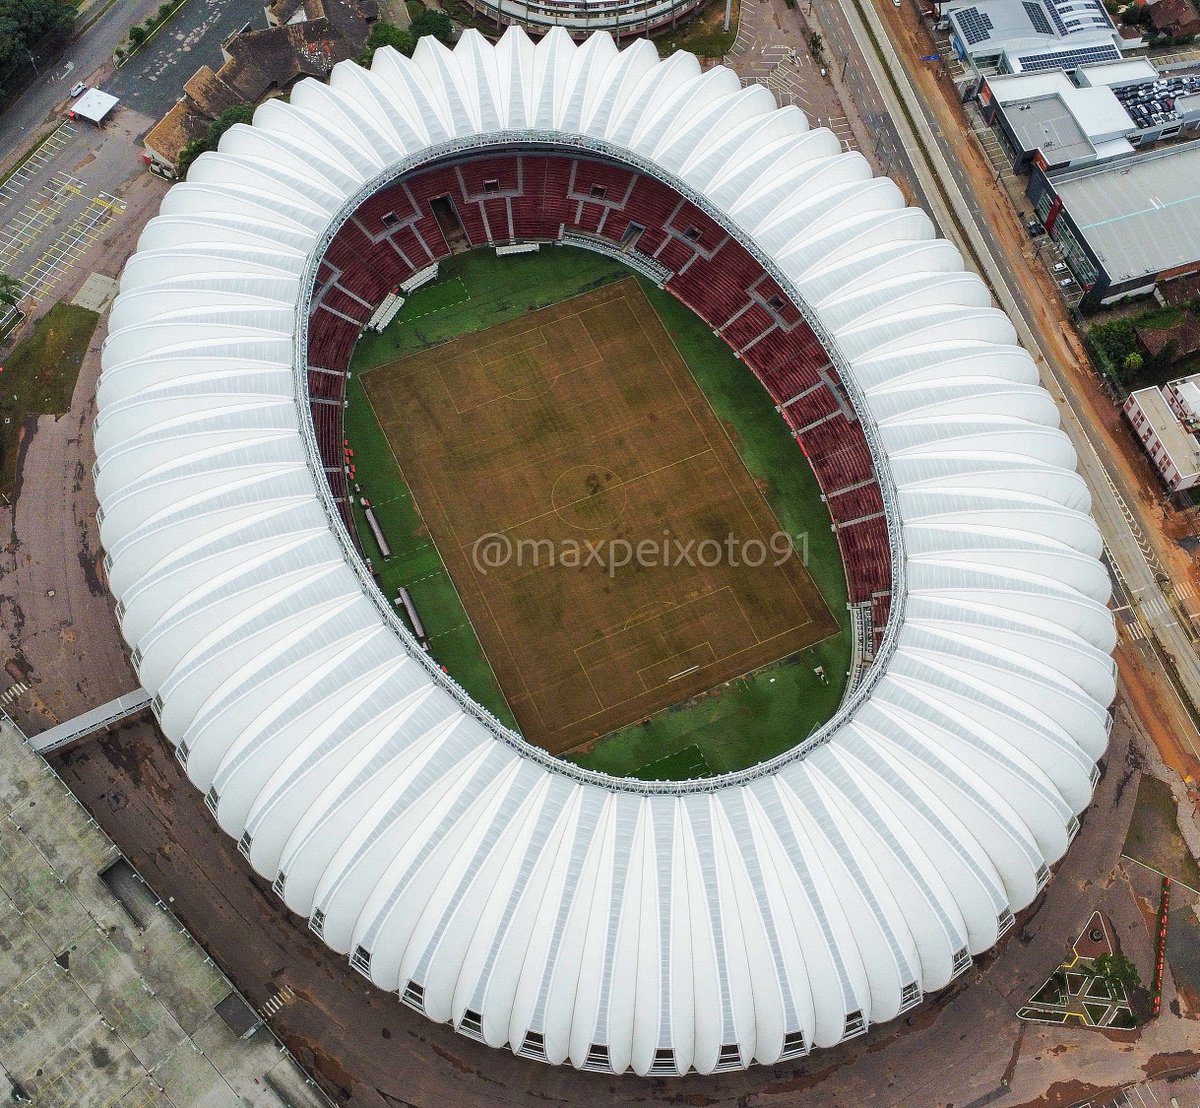 13/05 - Estádio Beira-Rio.

Para Imprensa: Disponível nas agências. 🚨

📸 @maxpeixoto91